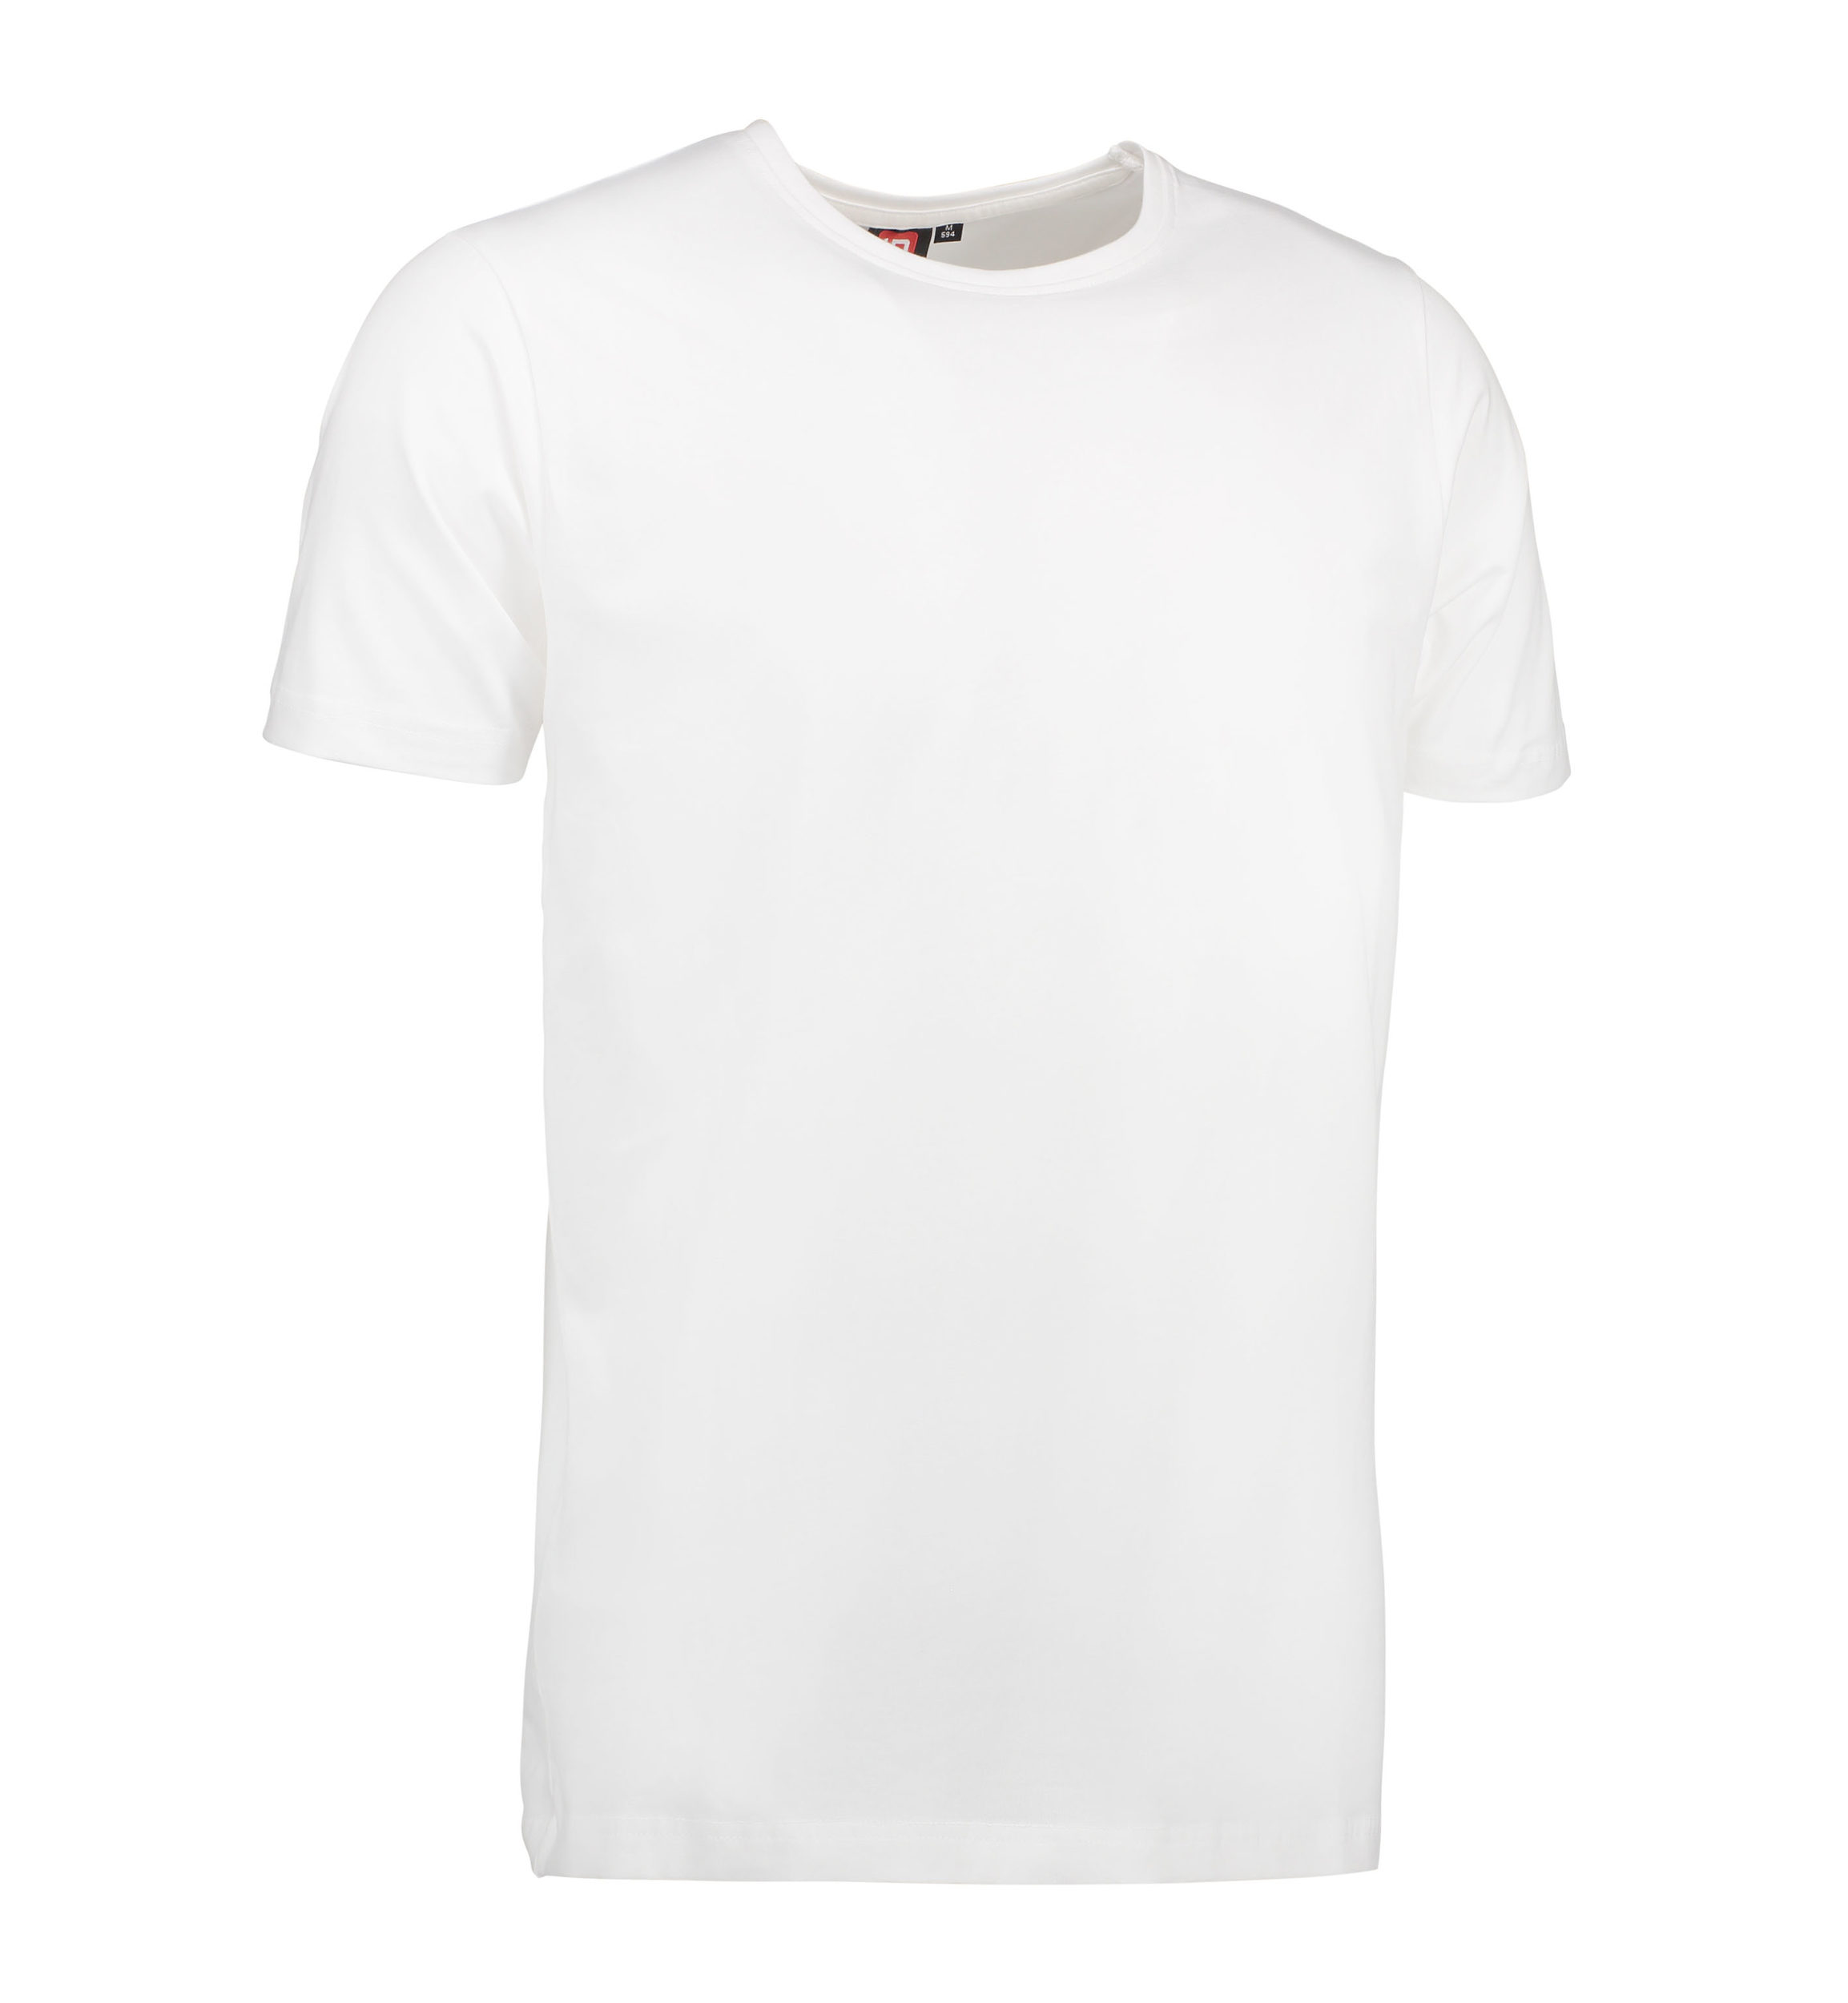 Billede af Stretch t-shirt til mænd i hvid - S hos Sygeplejebutikken.dk